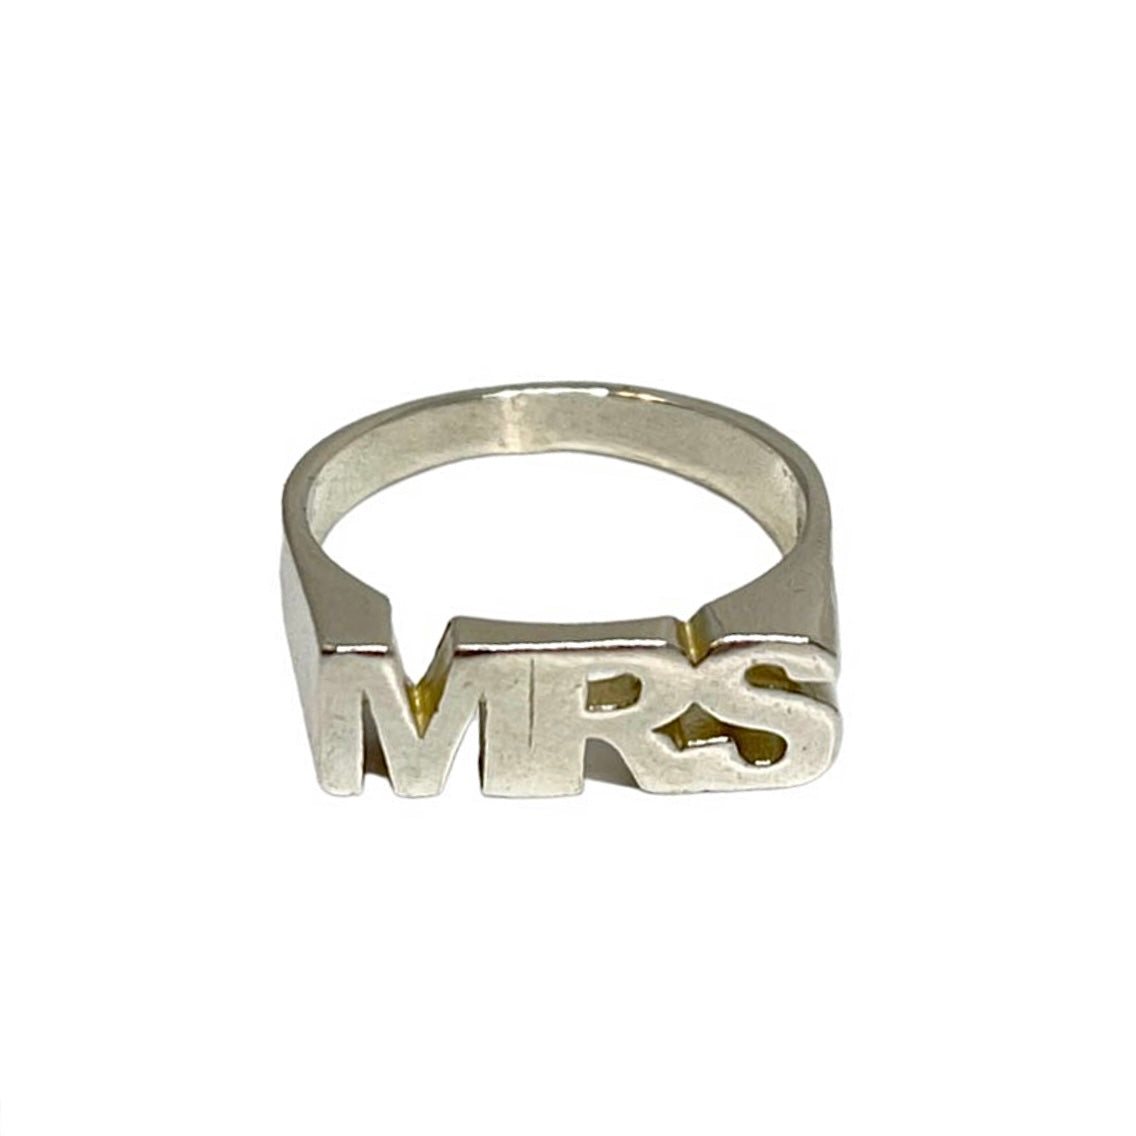 MR & MRS-ring